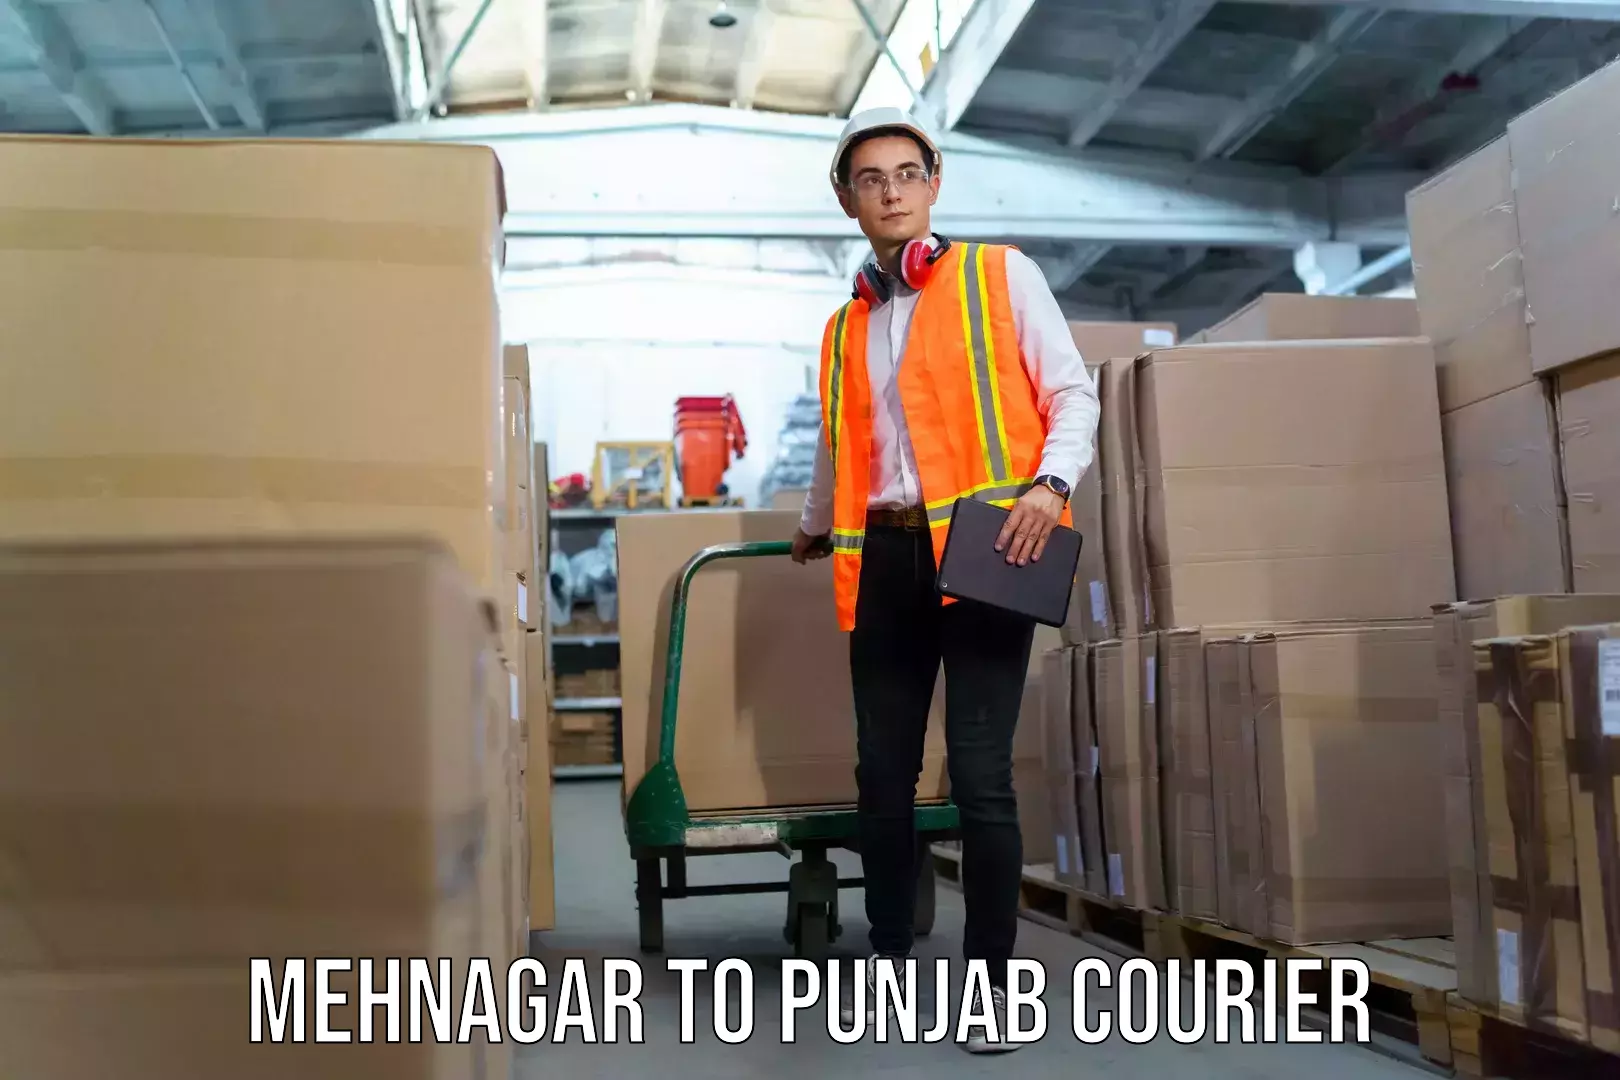 Luggage dispatch service Mehnagar to Punjab